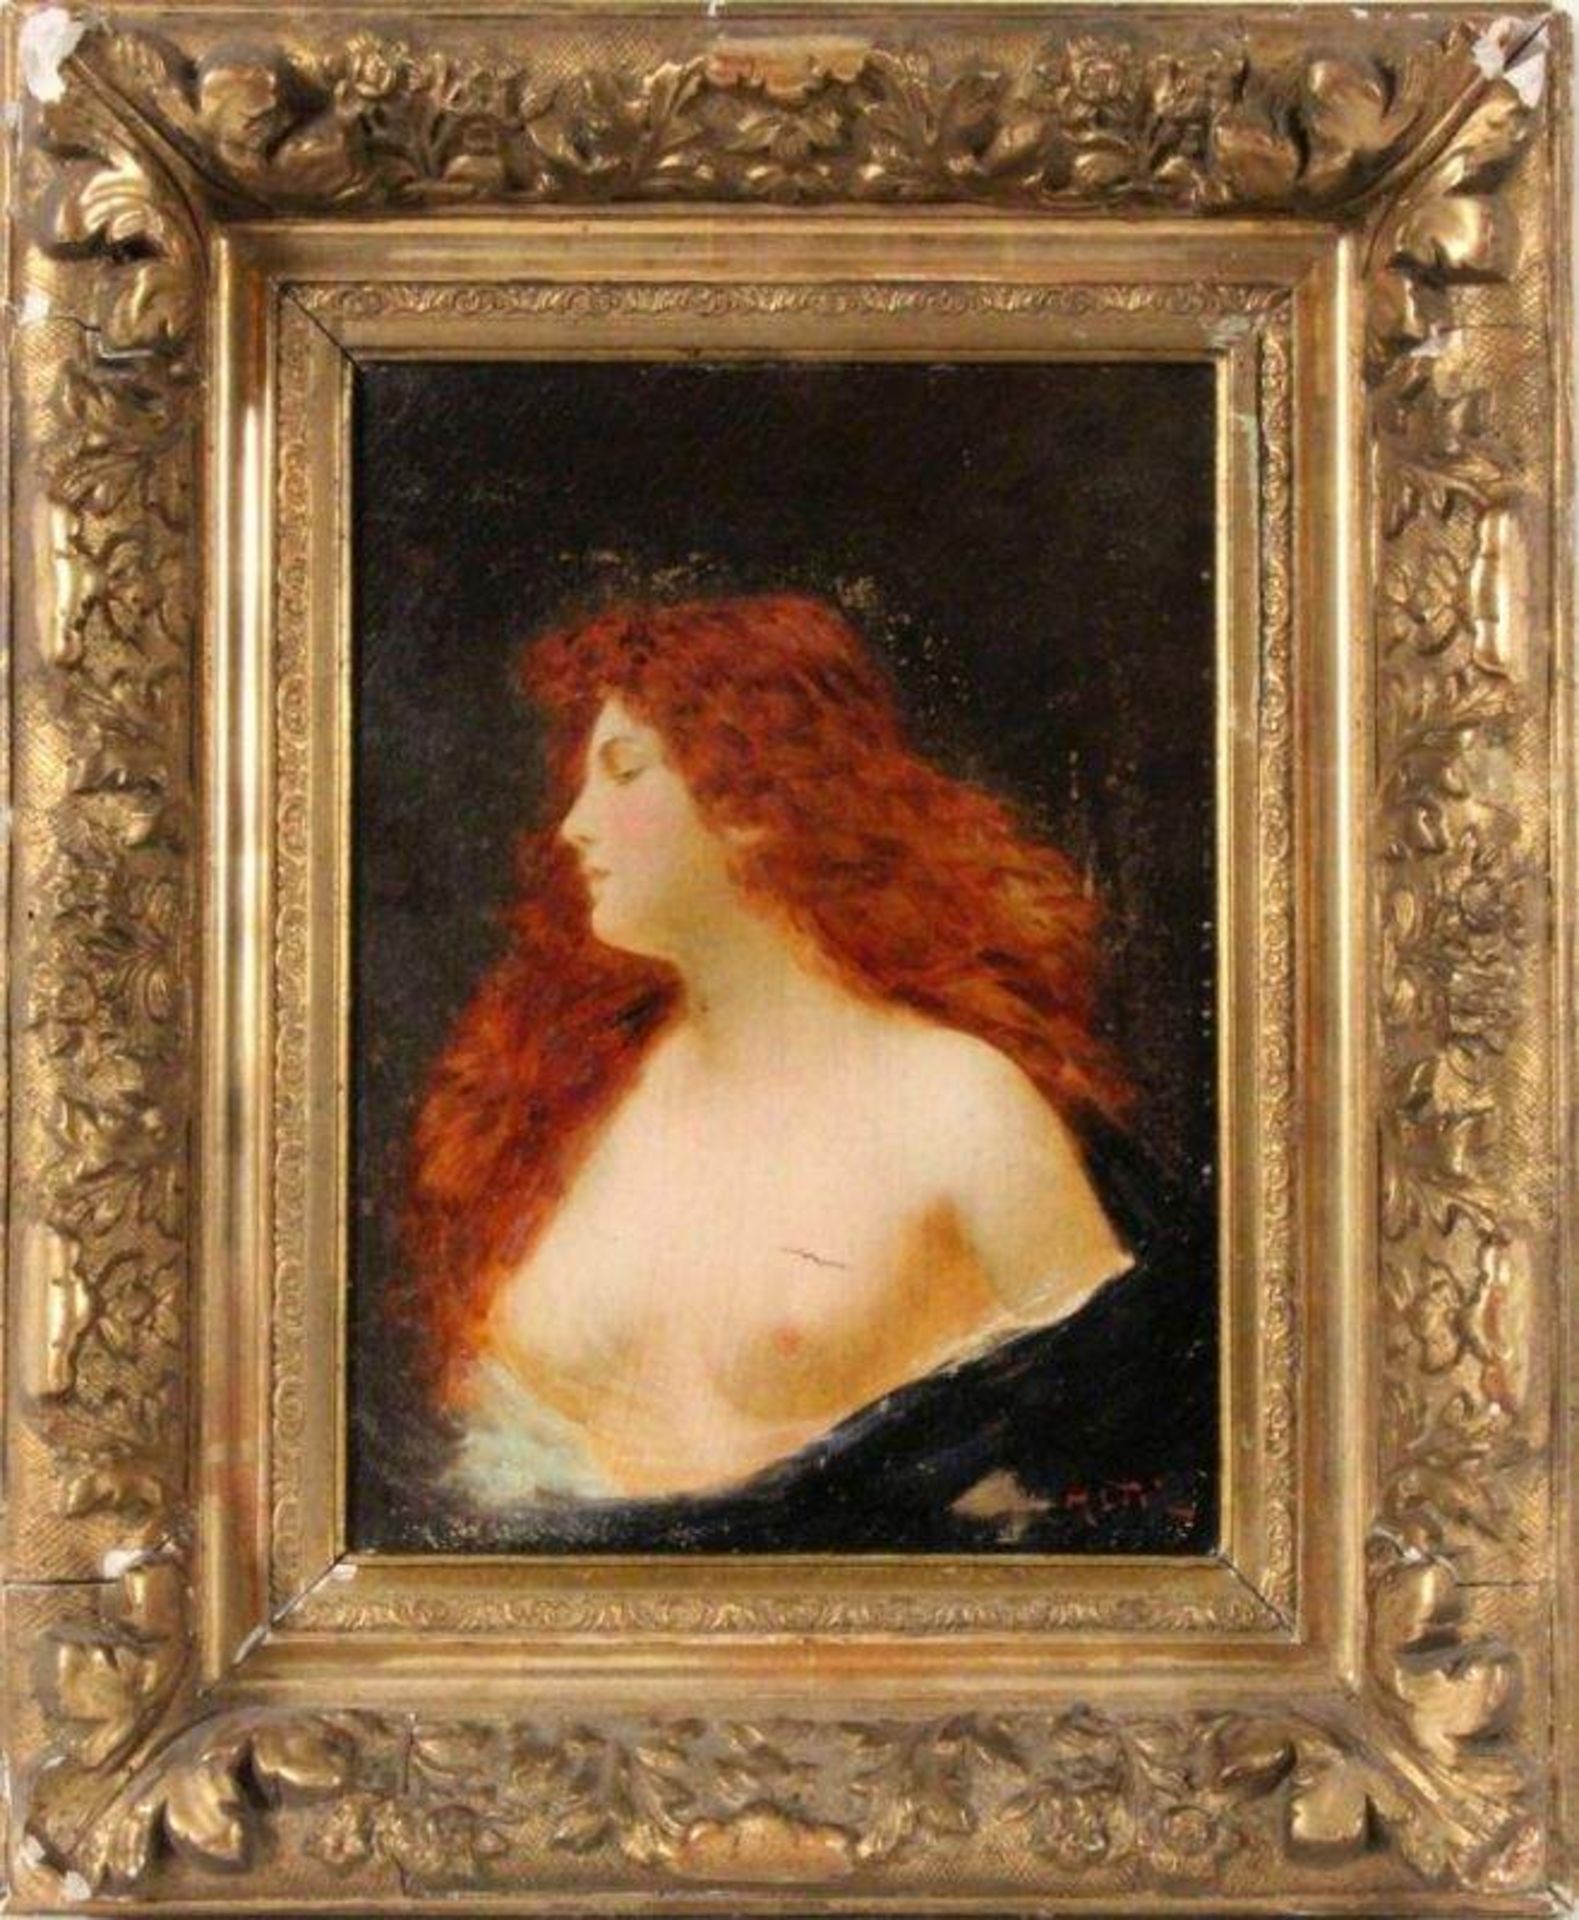 ASTI, ANGELOParis 1847 - 1903 Gorbio / Menton Halbakt einer jungen Frau mit langen roten Haaren.